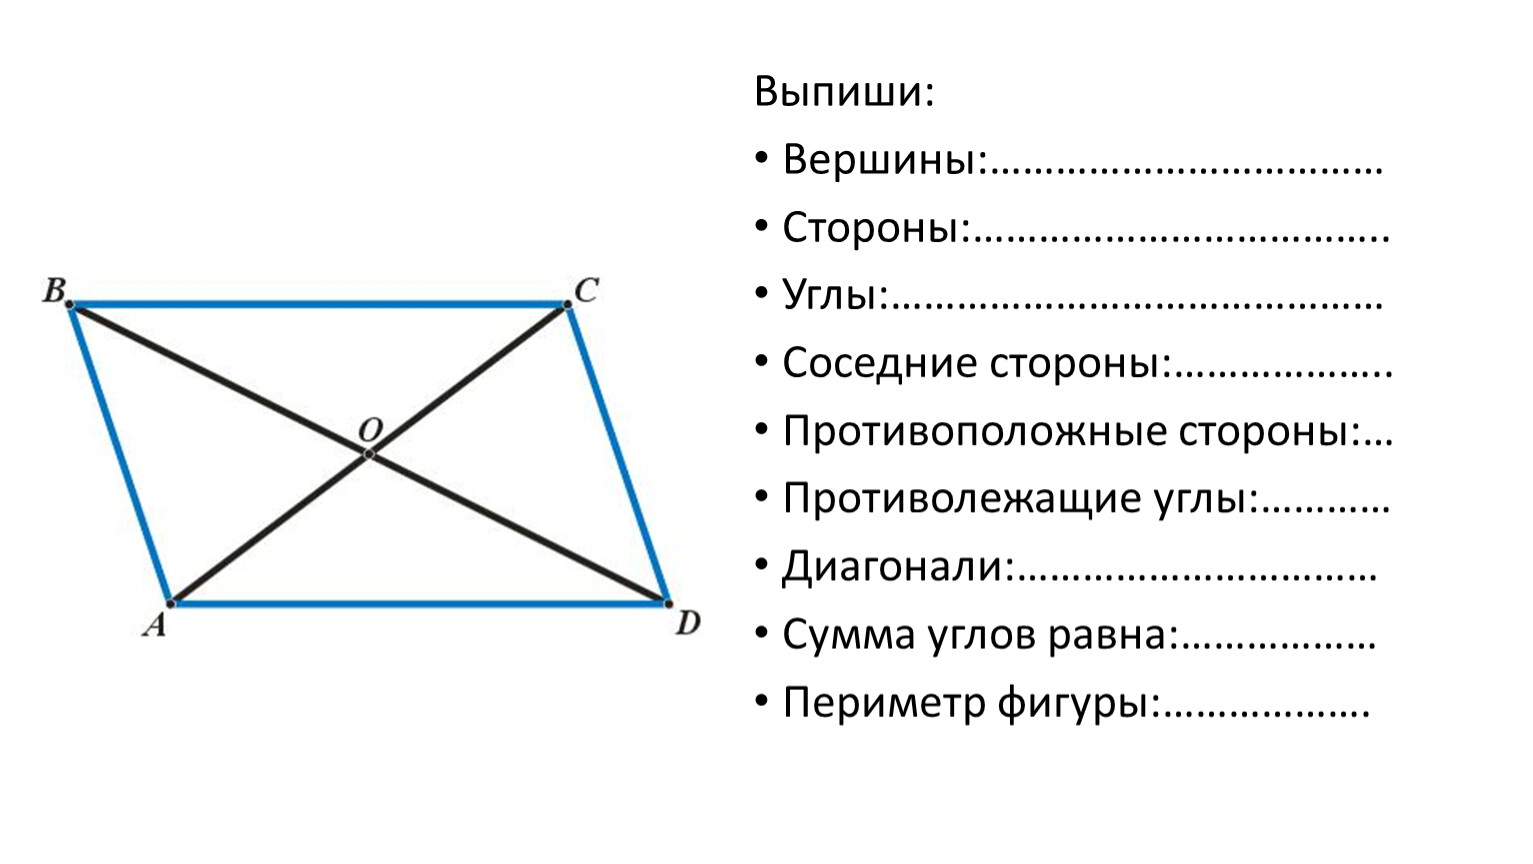 Четырехугольник с равными диагоналями это. Противоположные вершины четырехугольника. Соседние вершины четырехугольника. Диагонали четырехугольника. Противоположные стороны и вершины четырехугольника.